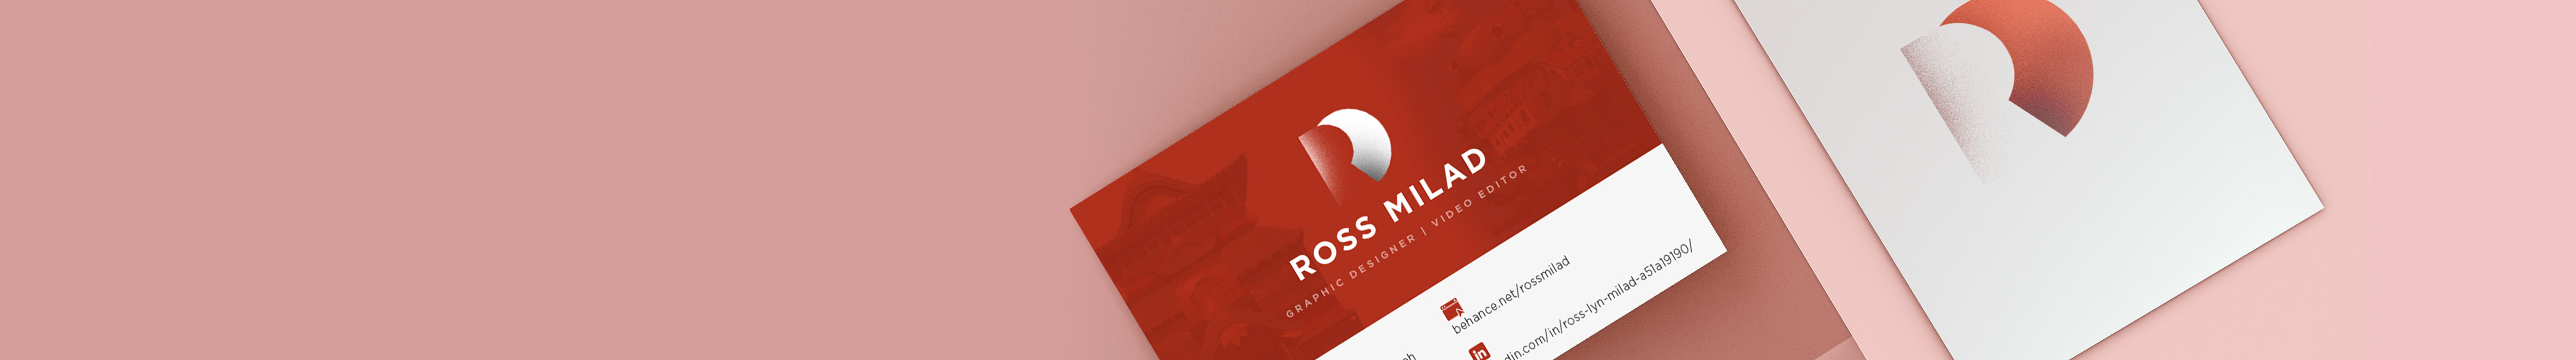 Profil-Banner von Ross-lyn Milad